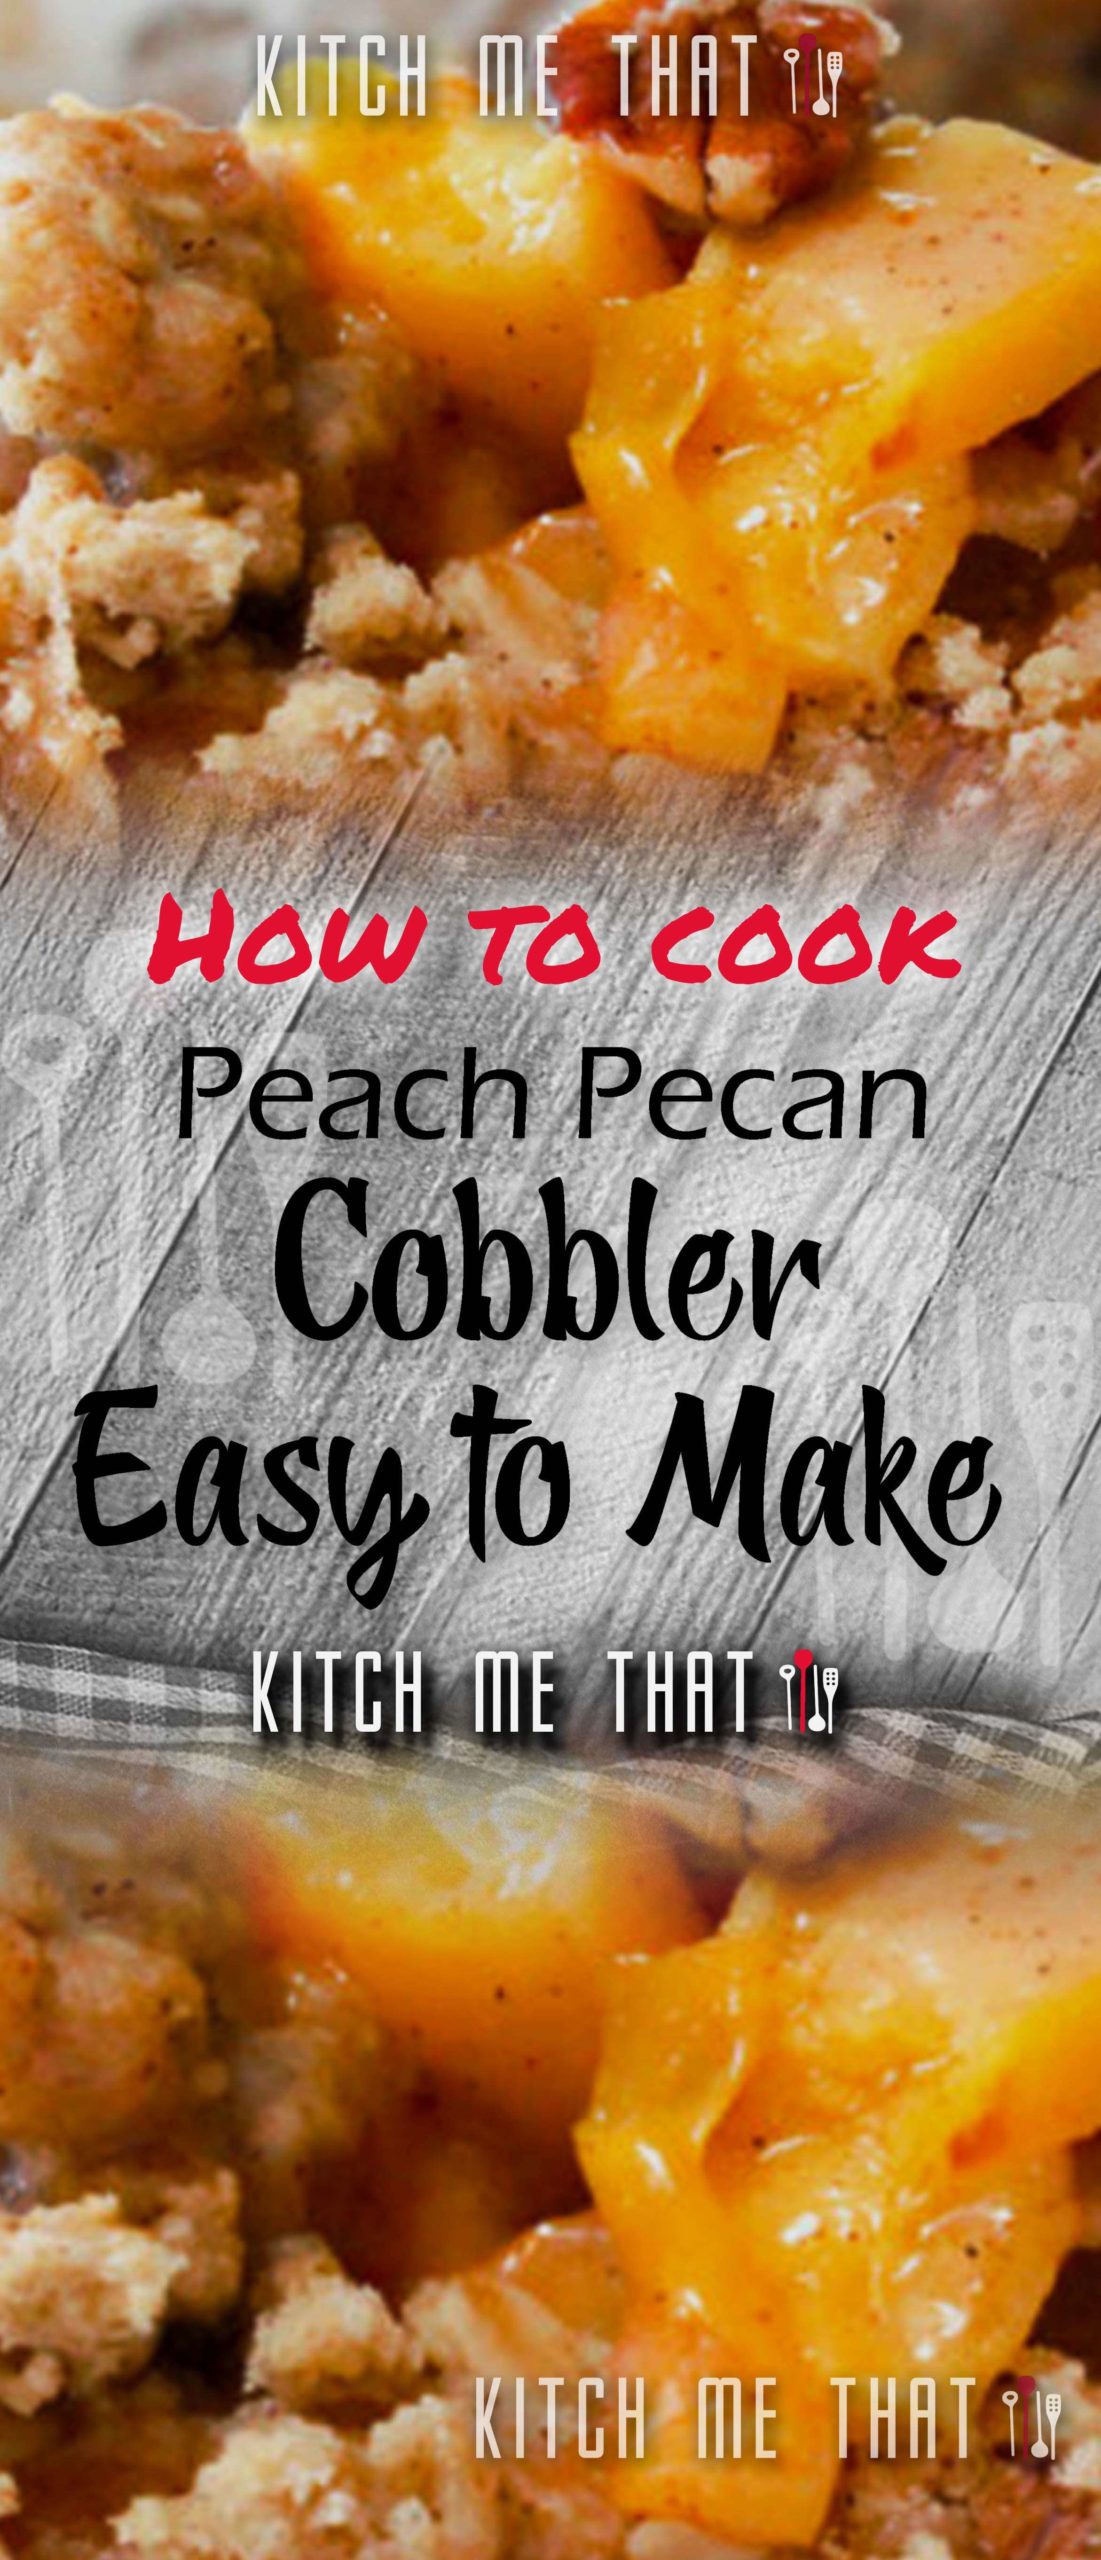 Peach Pecan Cobbler